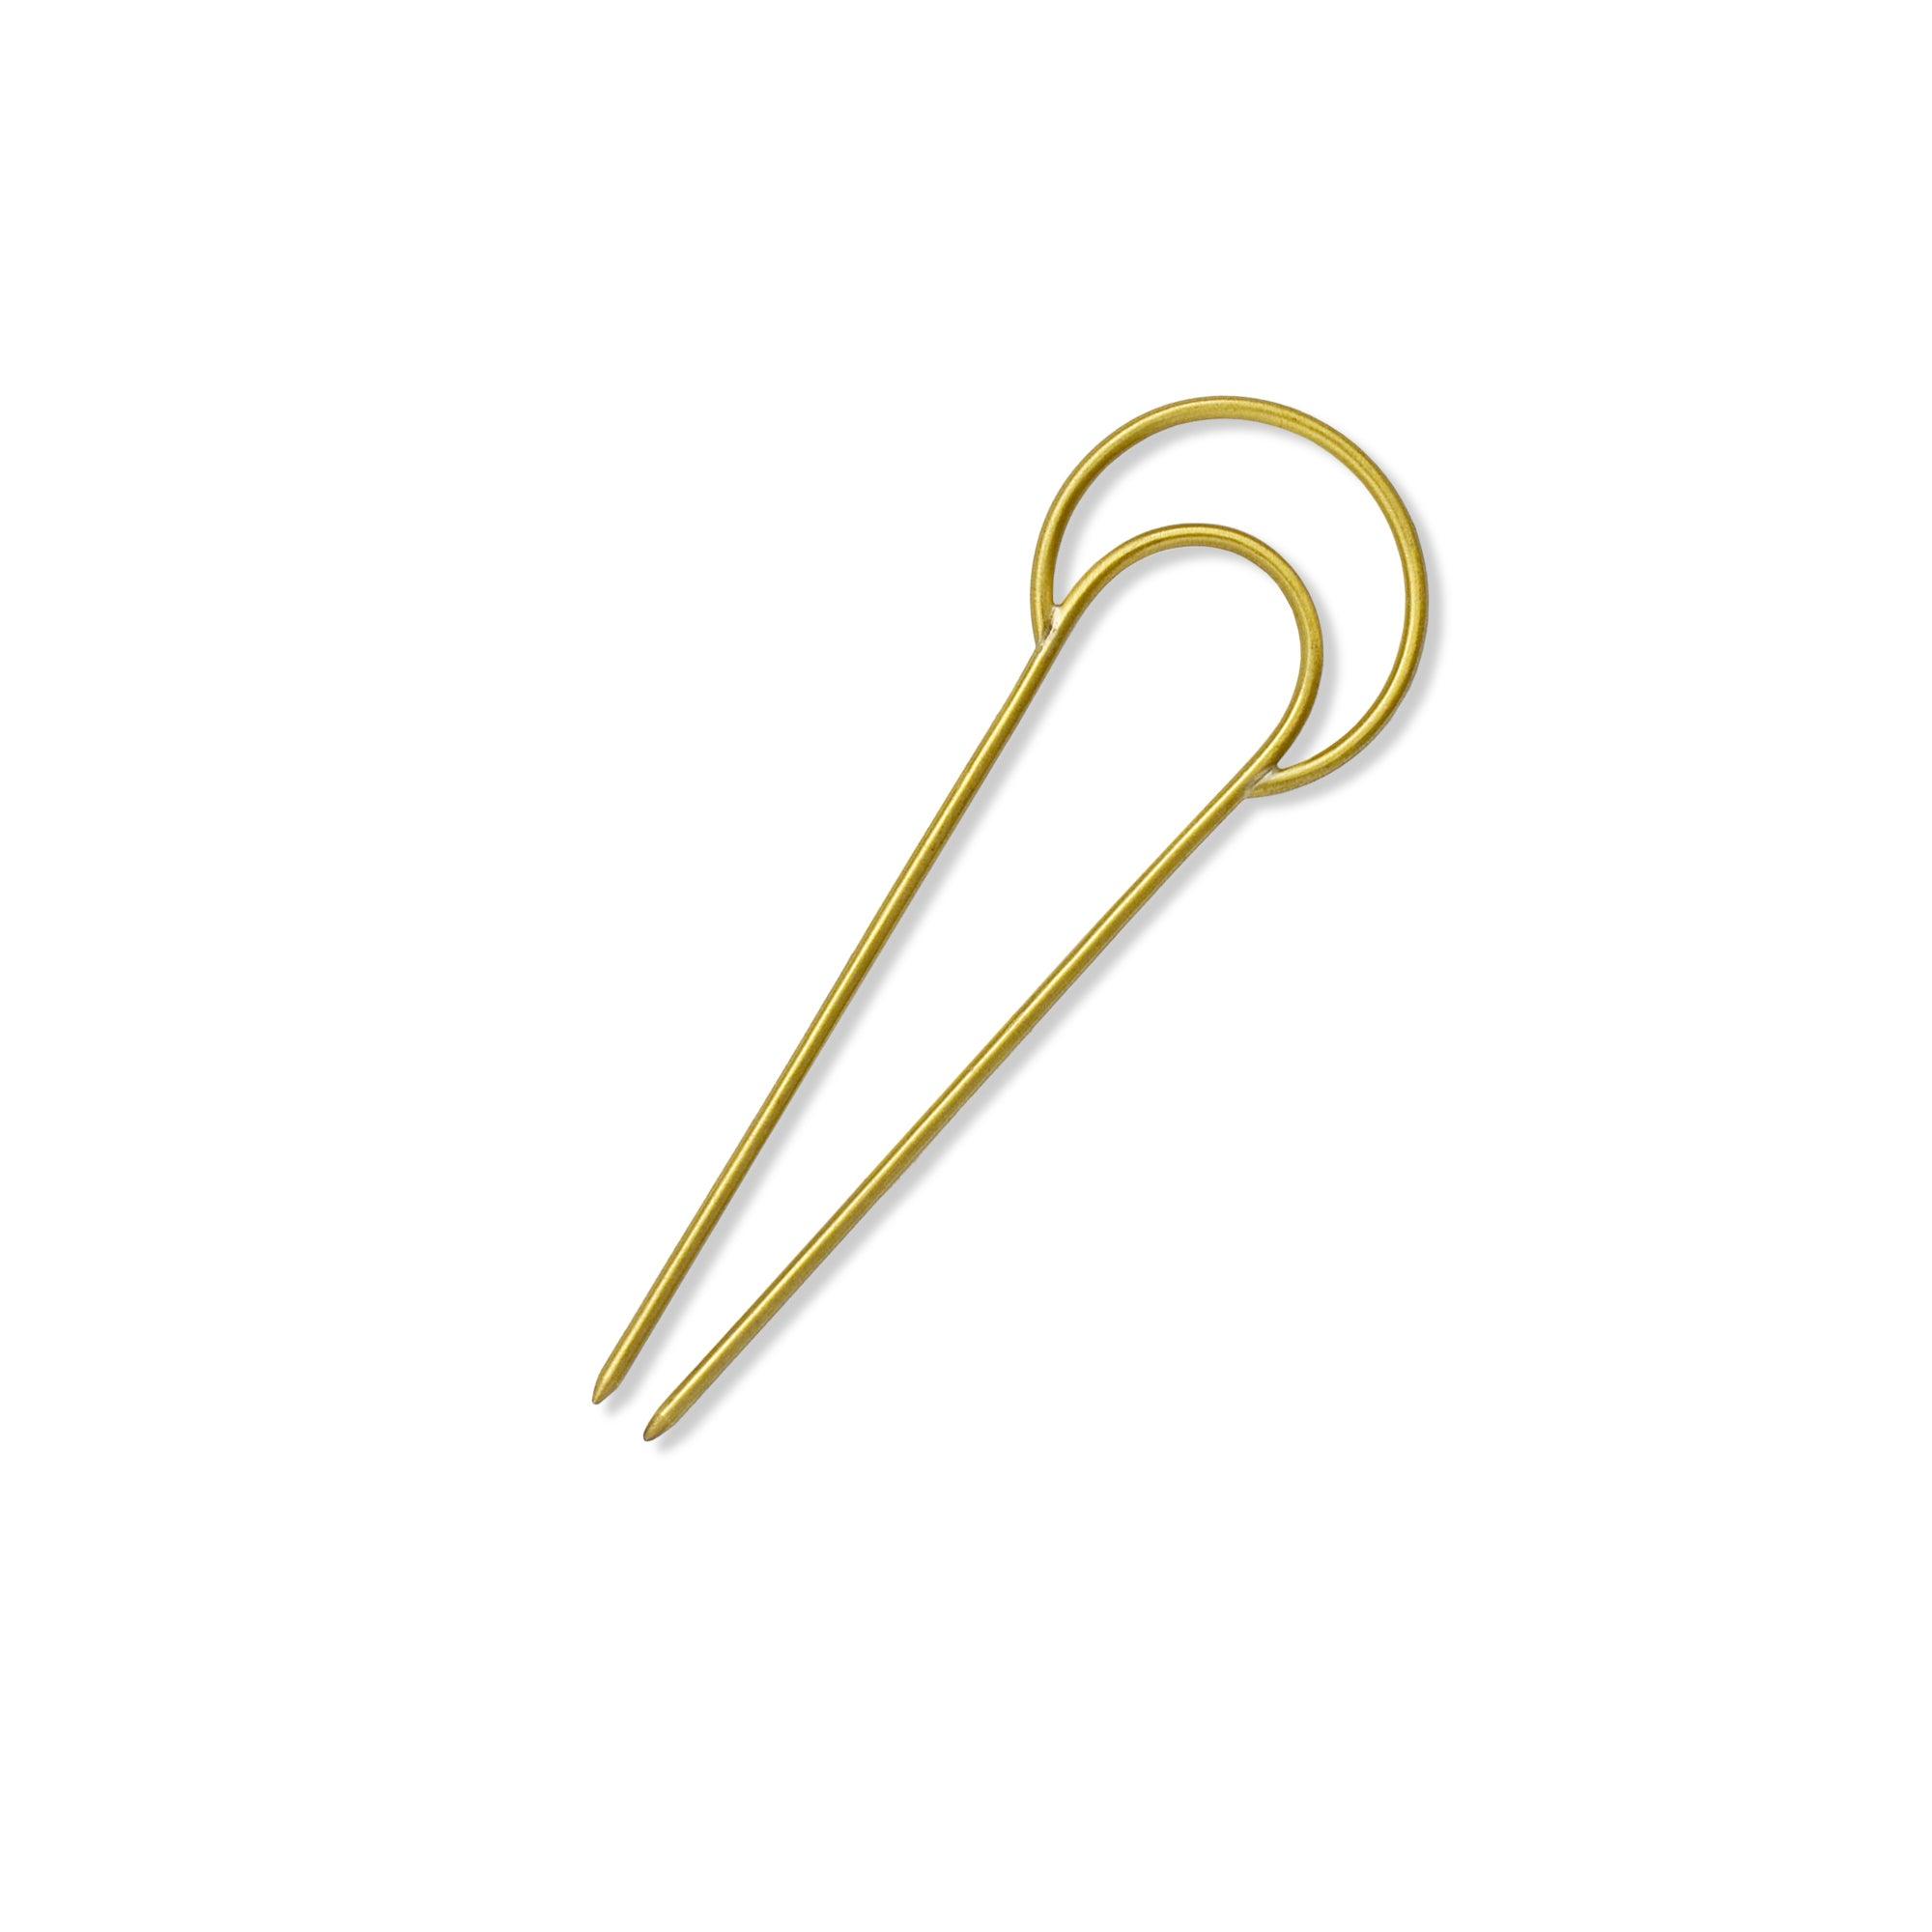 Crescent Brass Hair Pin - CEDAR AND MYRRH